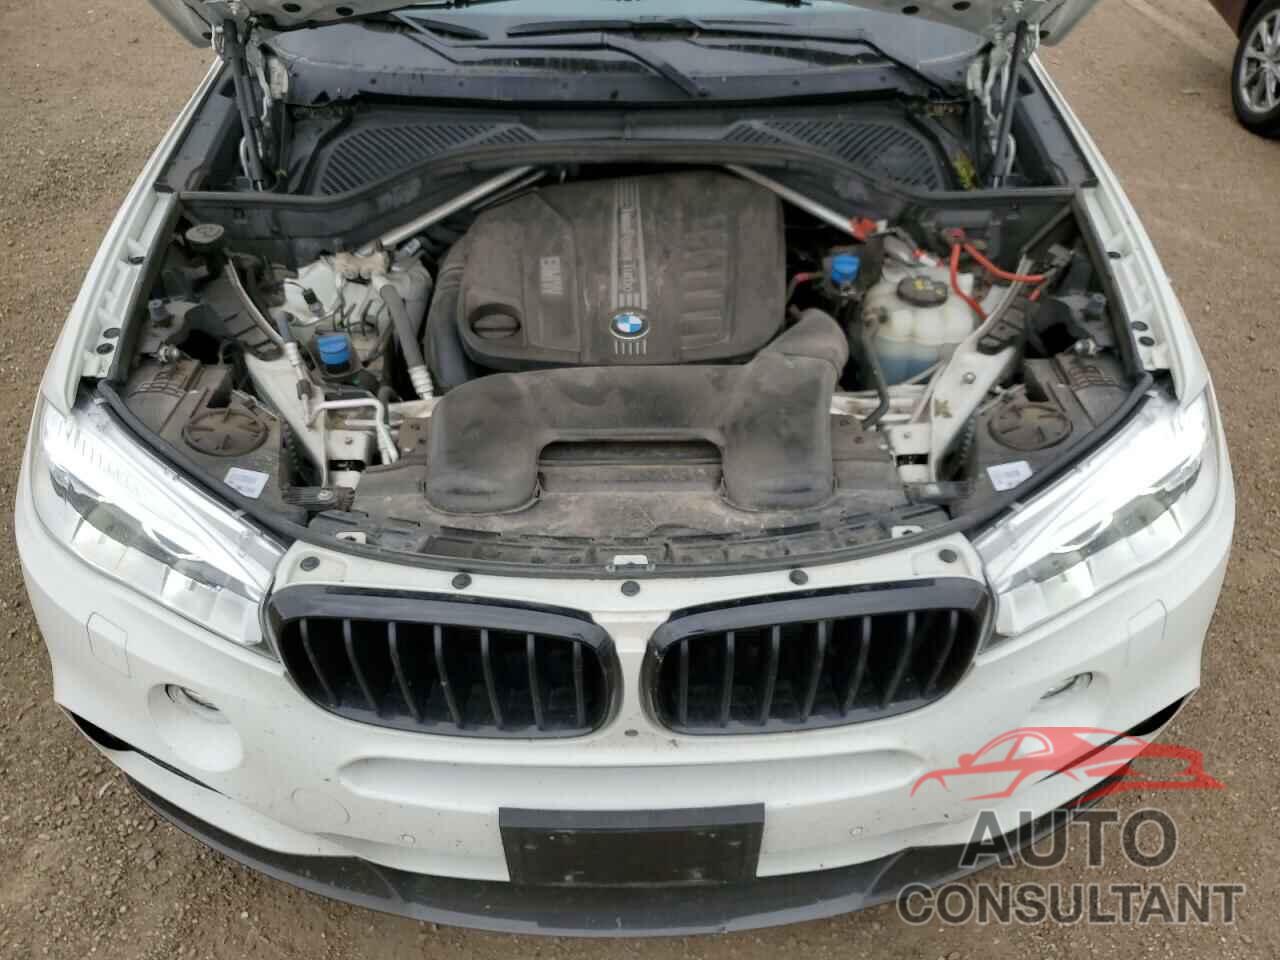 BMW X5 2016 - 5UXKS4C50G0N14330